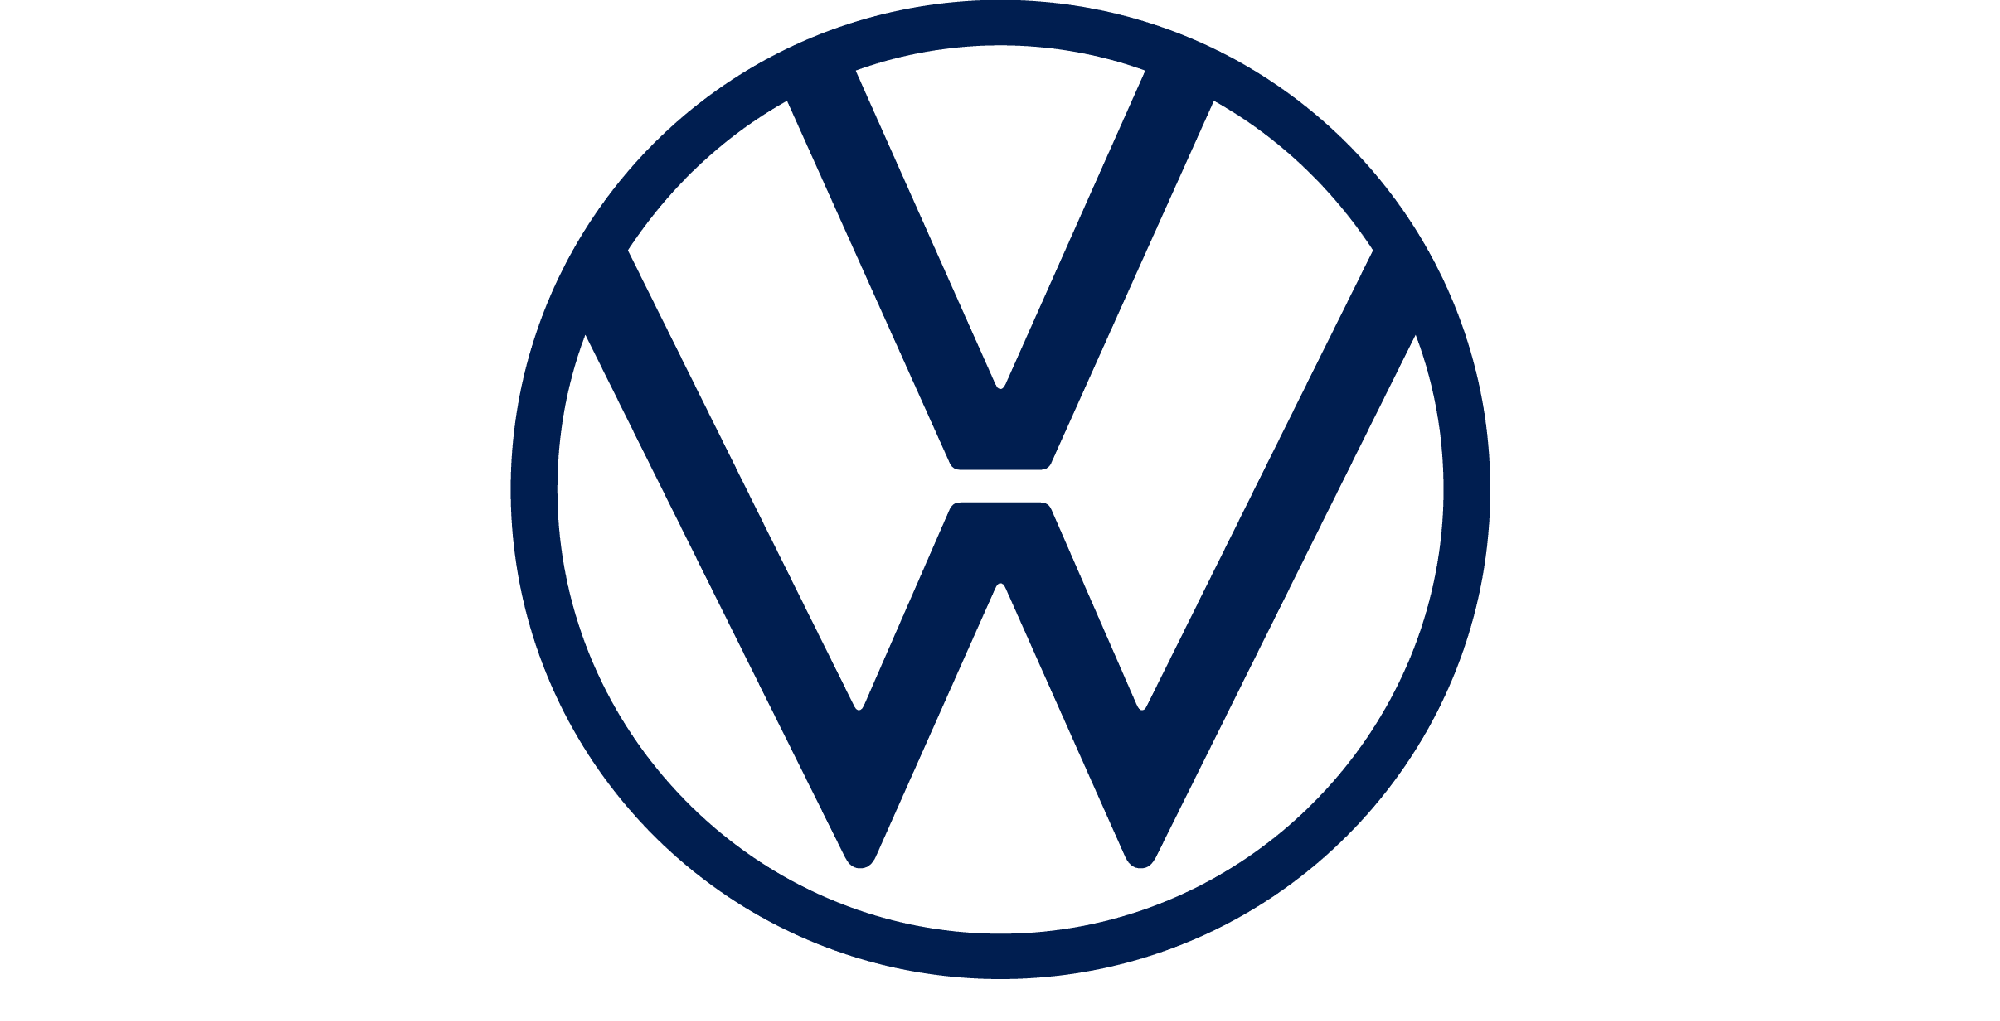 Volkswagen Slovakia